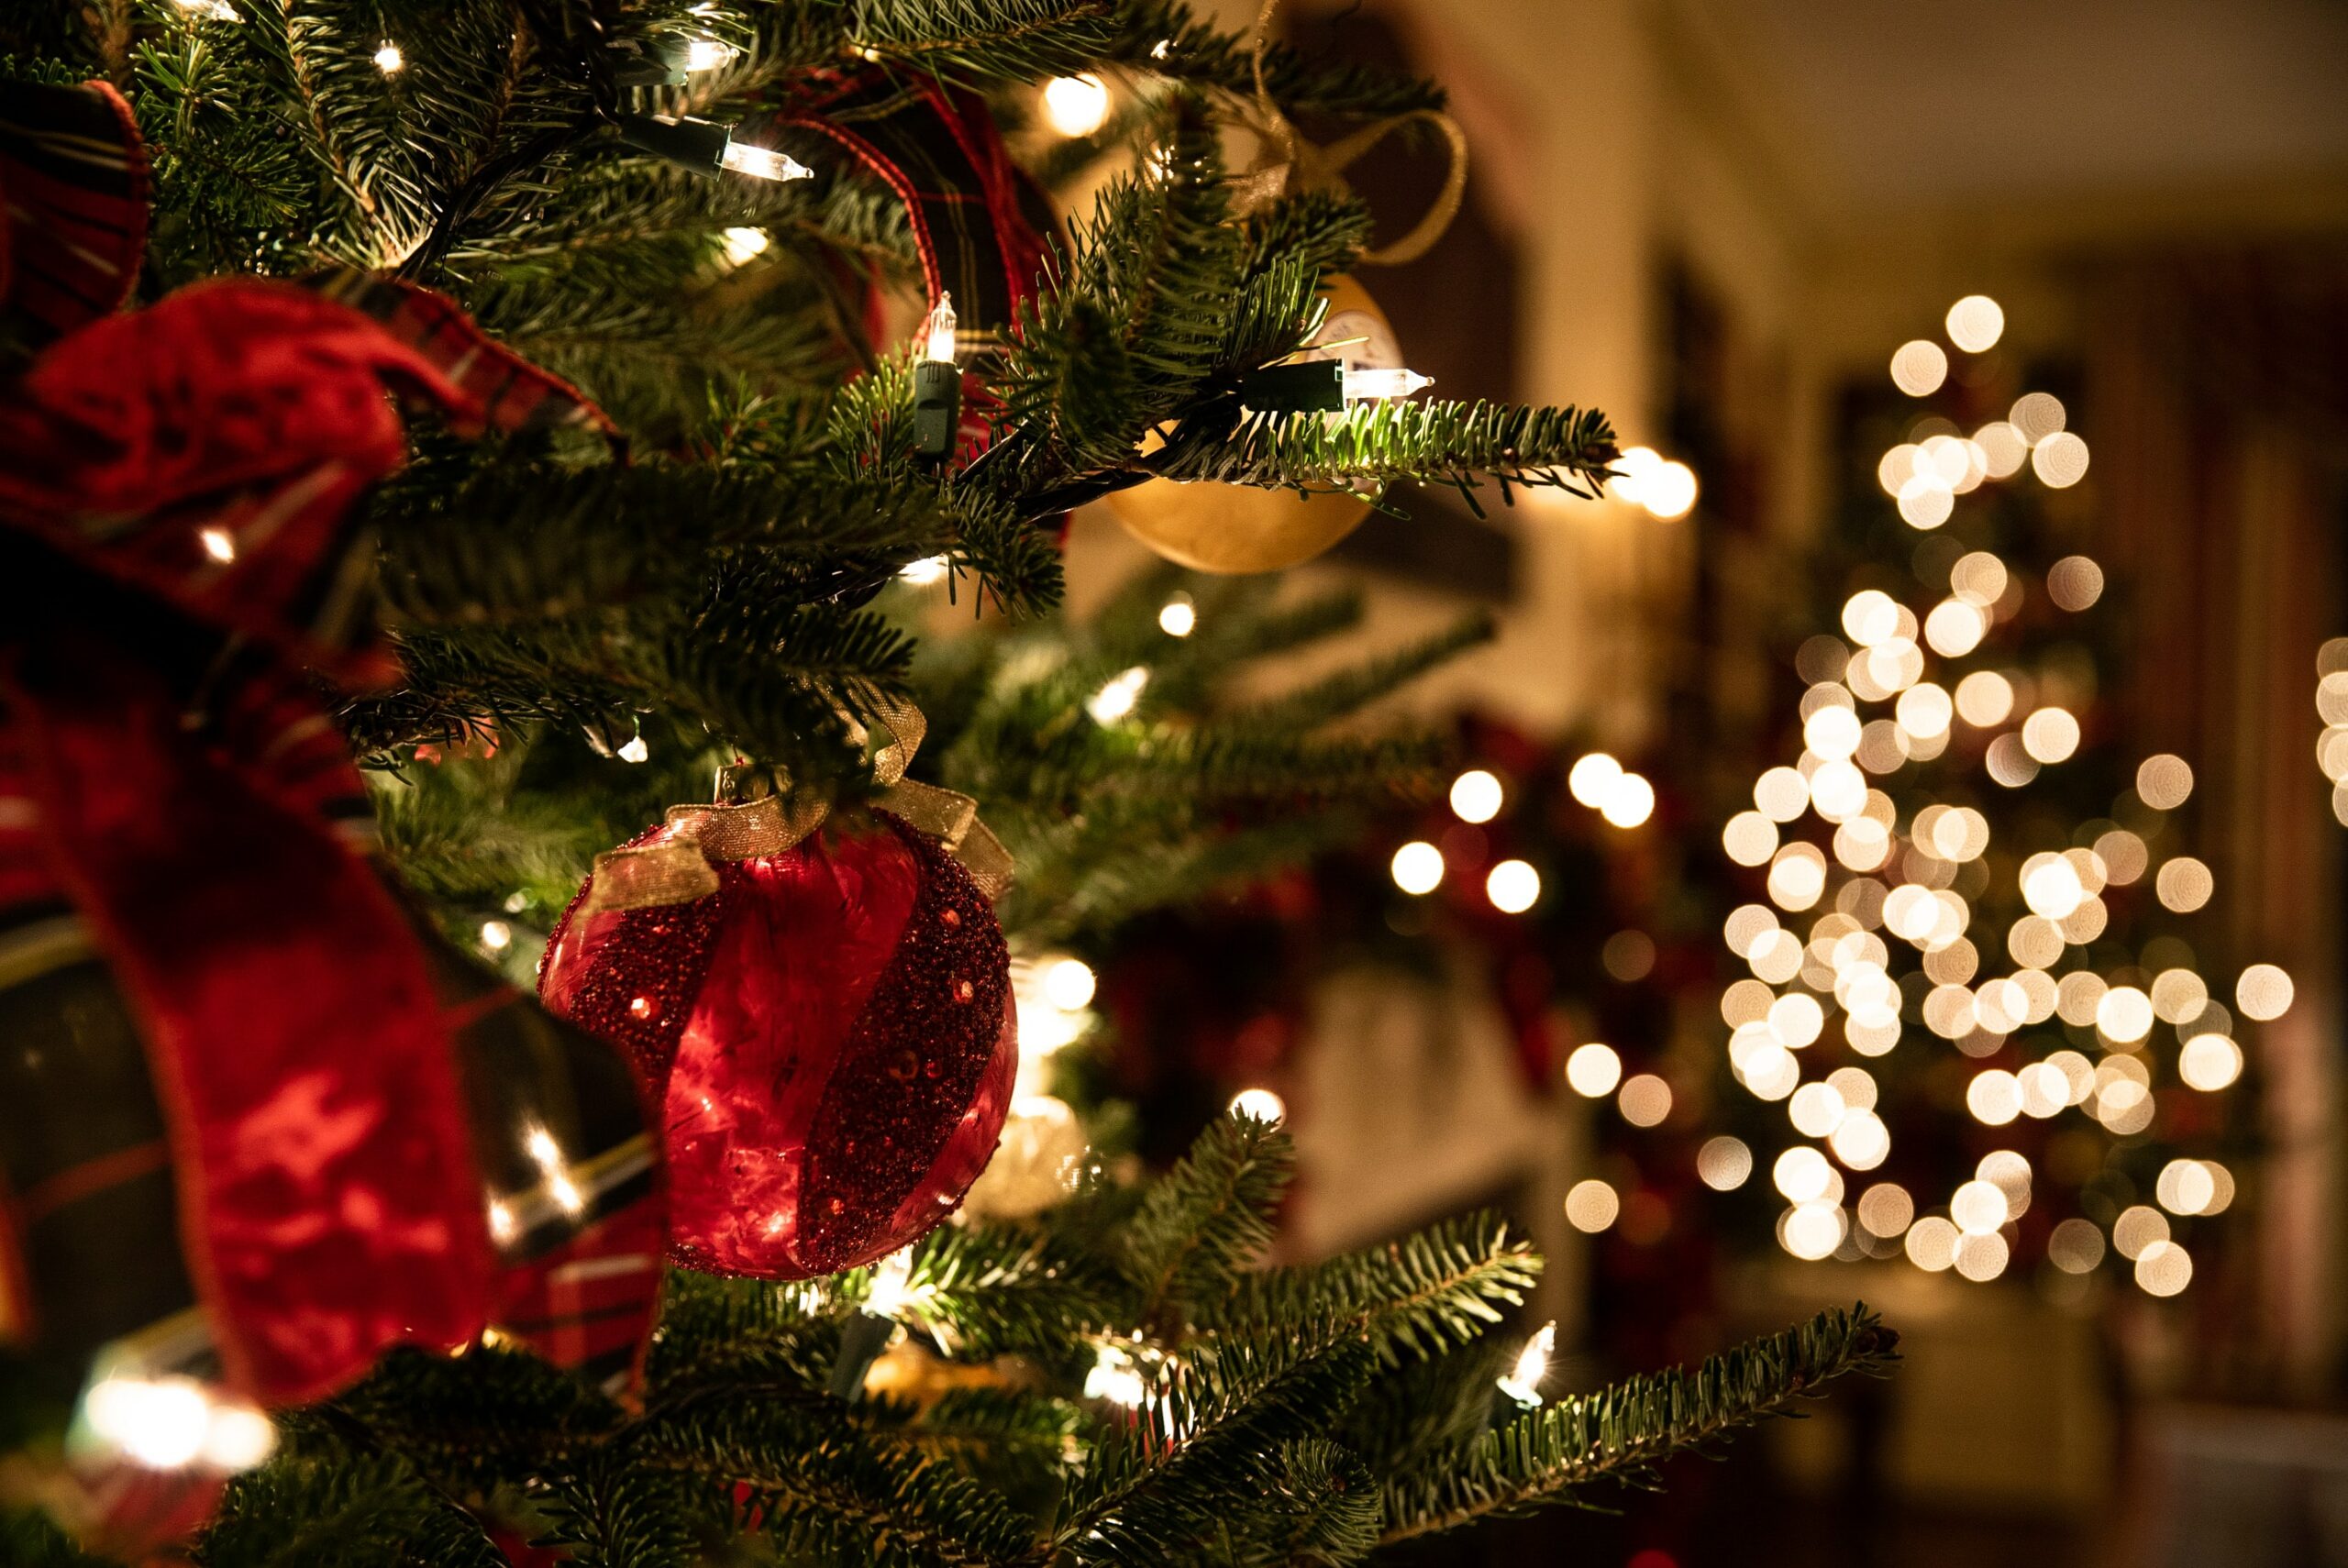 أسعار وأشكال أشجار عيد الميلاد هذا العام